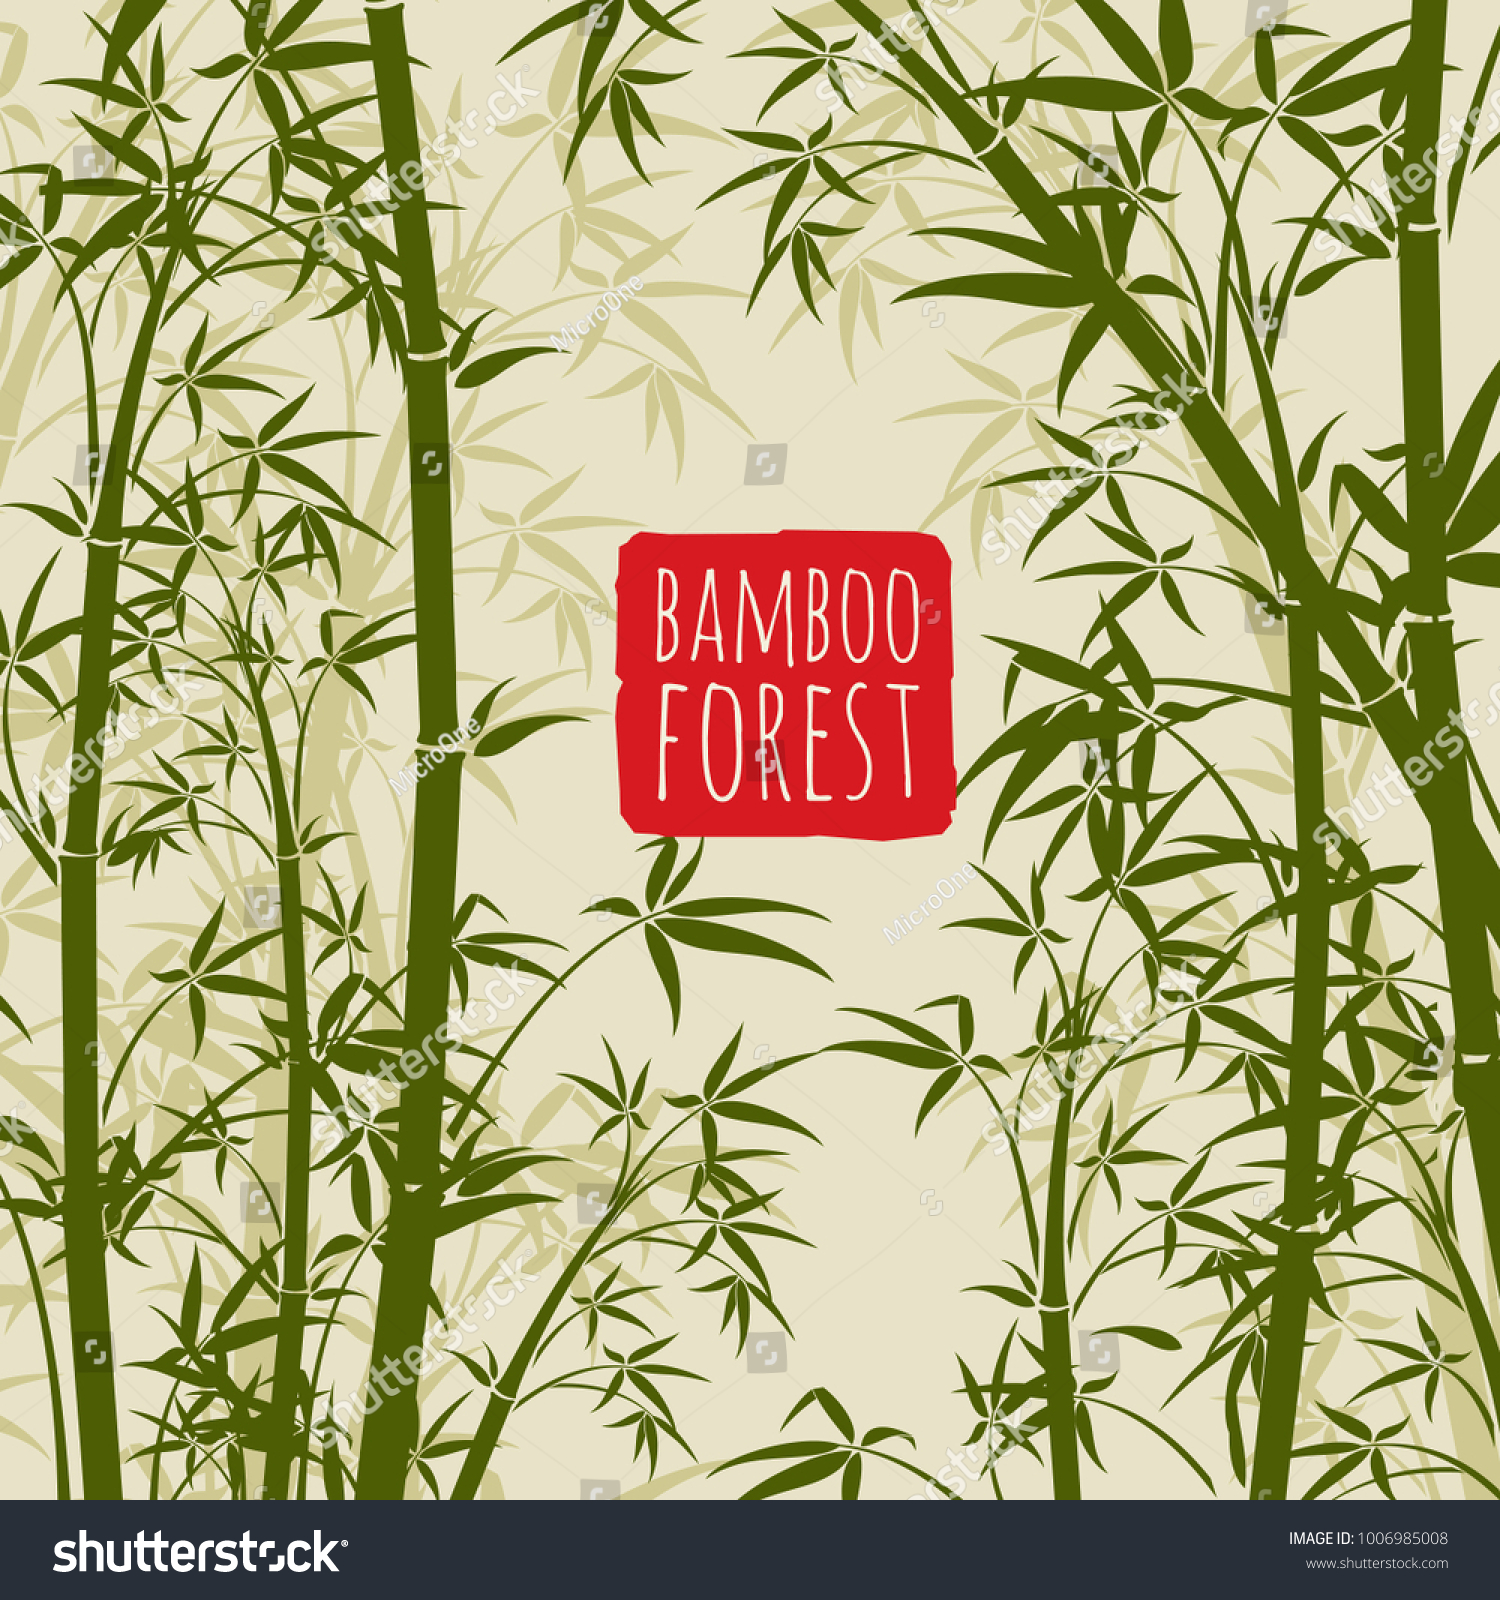 竹雨林のベクター画像壁紙 和漢文 竹の模様の自然 山林イラスト のベクター画像素材 ロイヤリティフリー